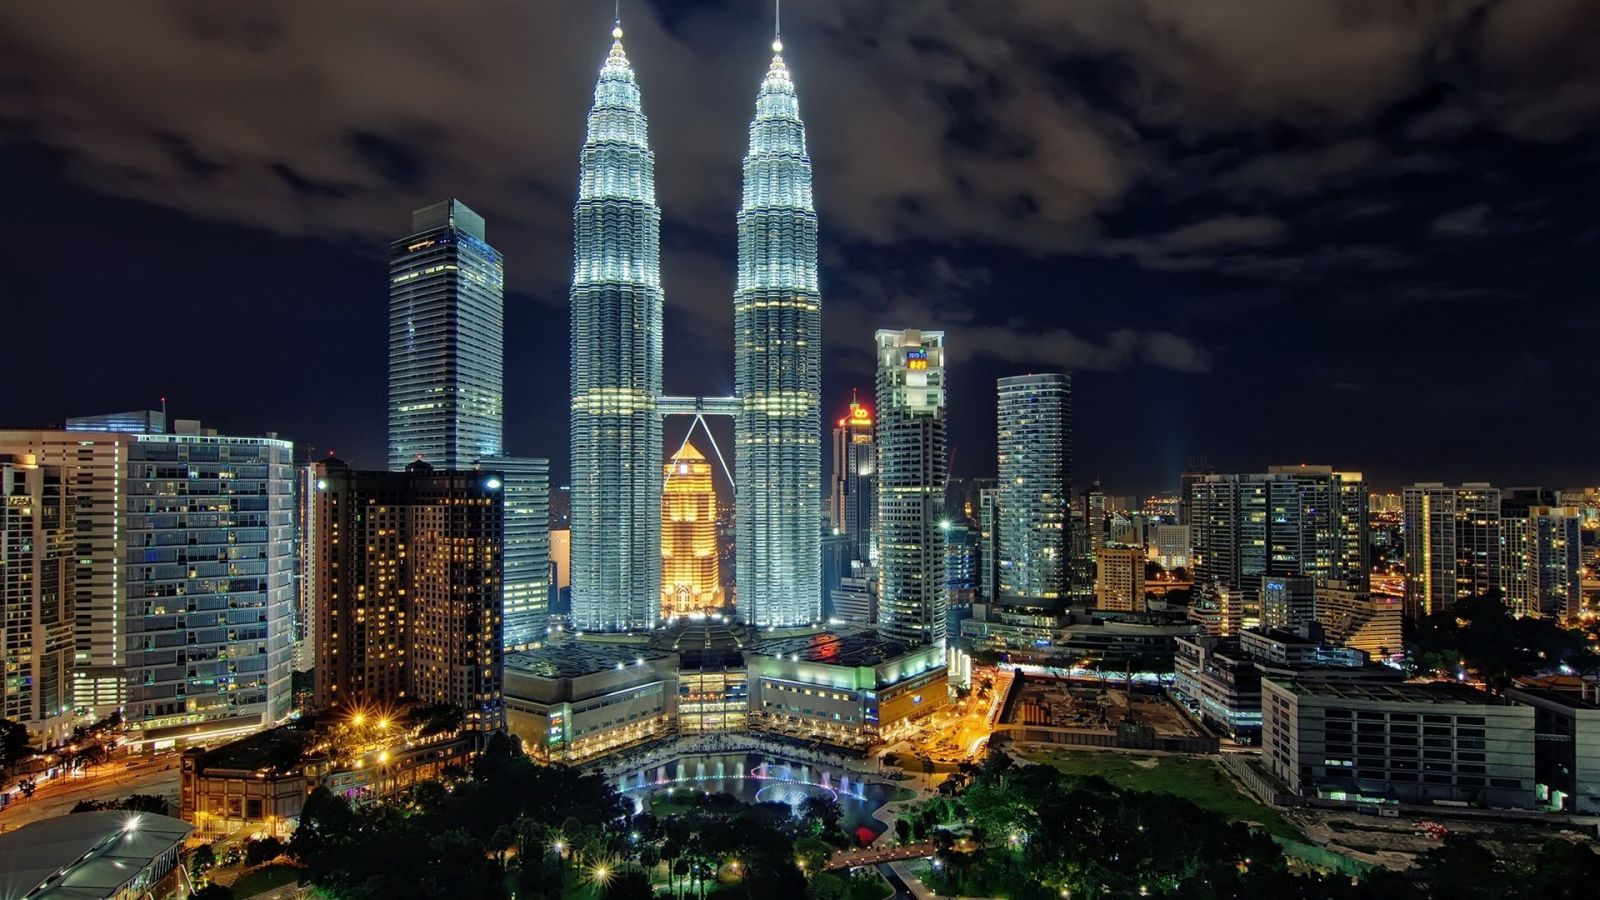 tháp đôi Petronas Malaysia